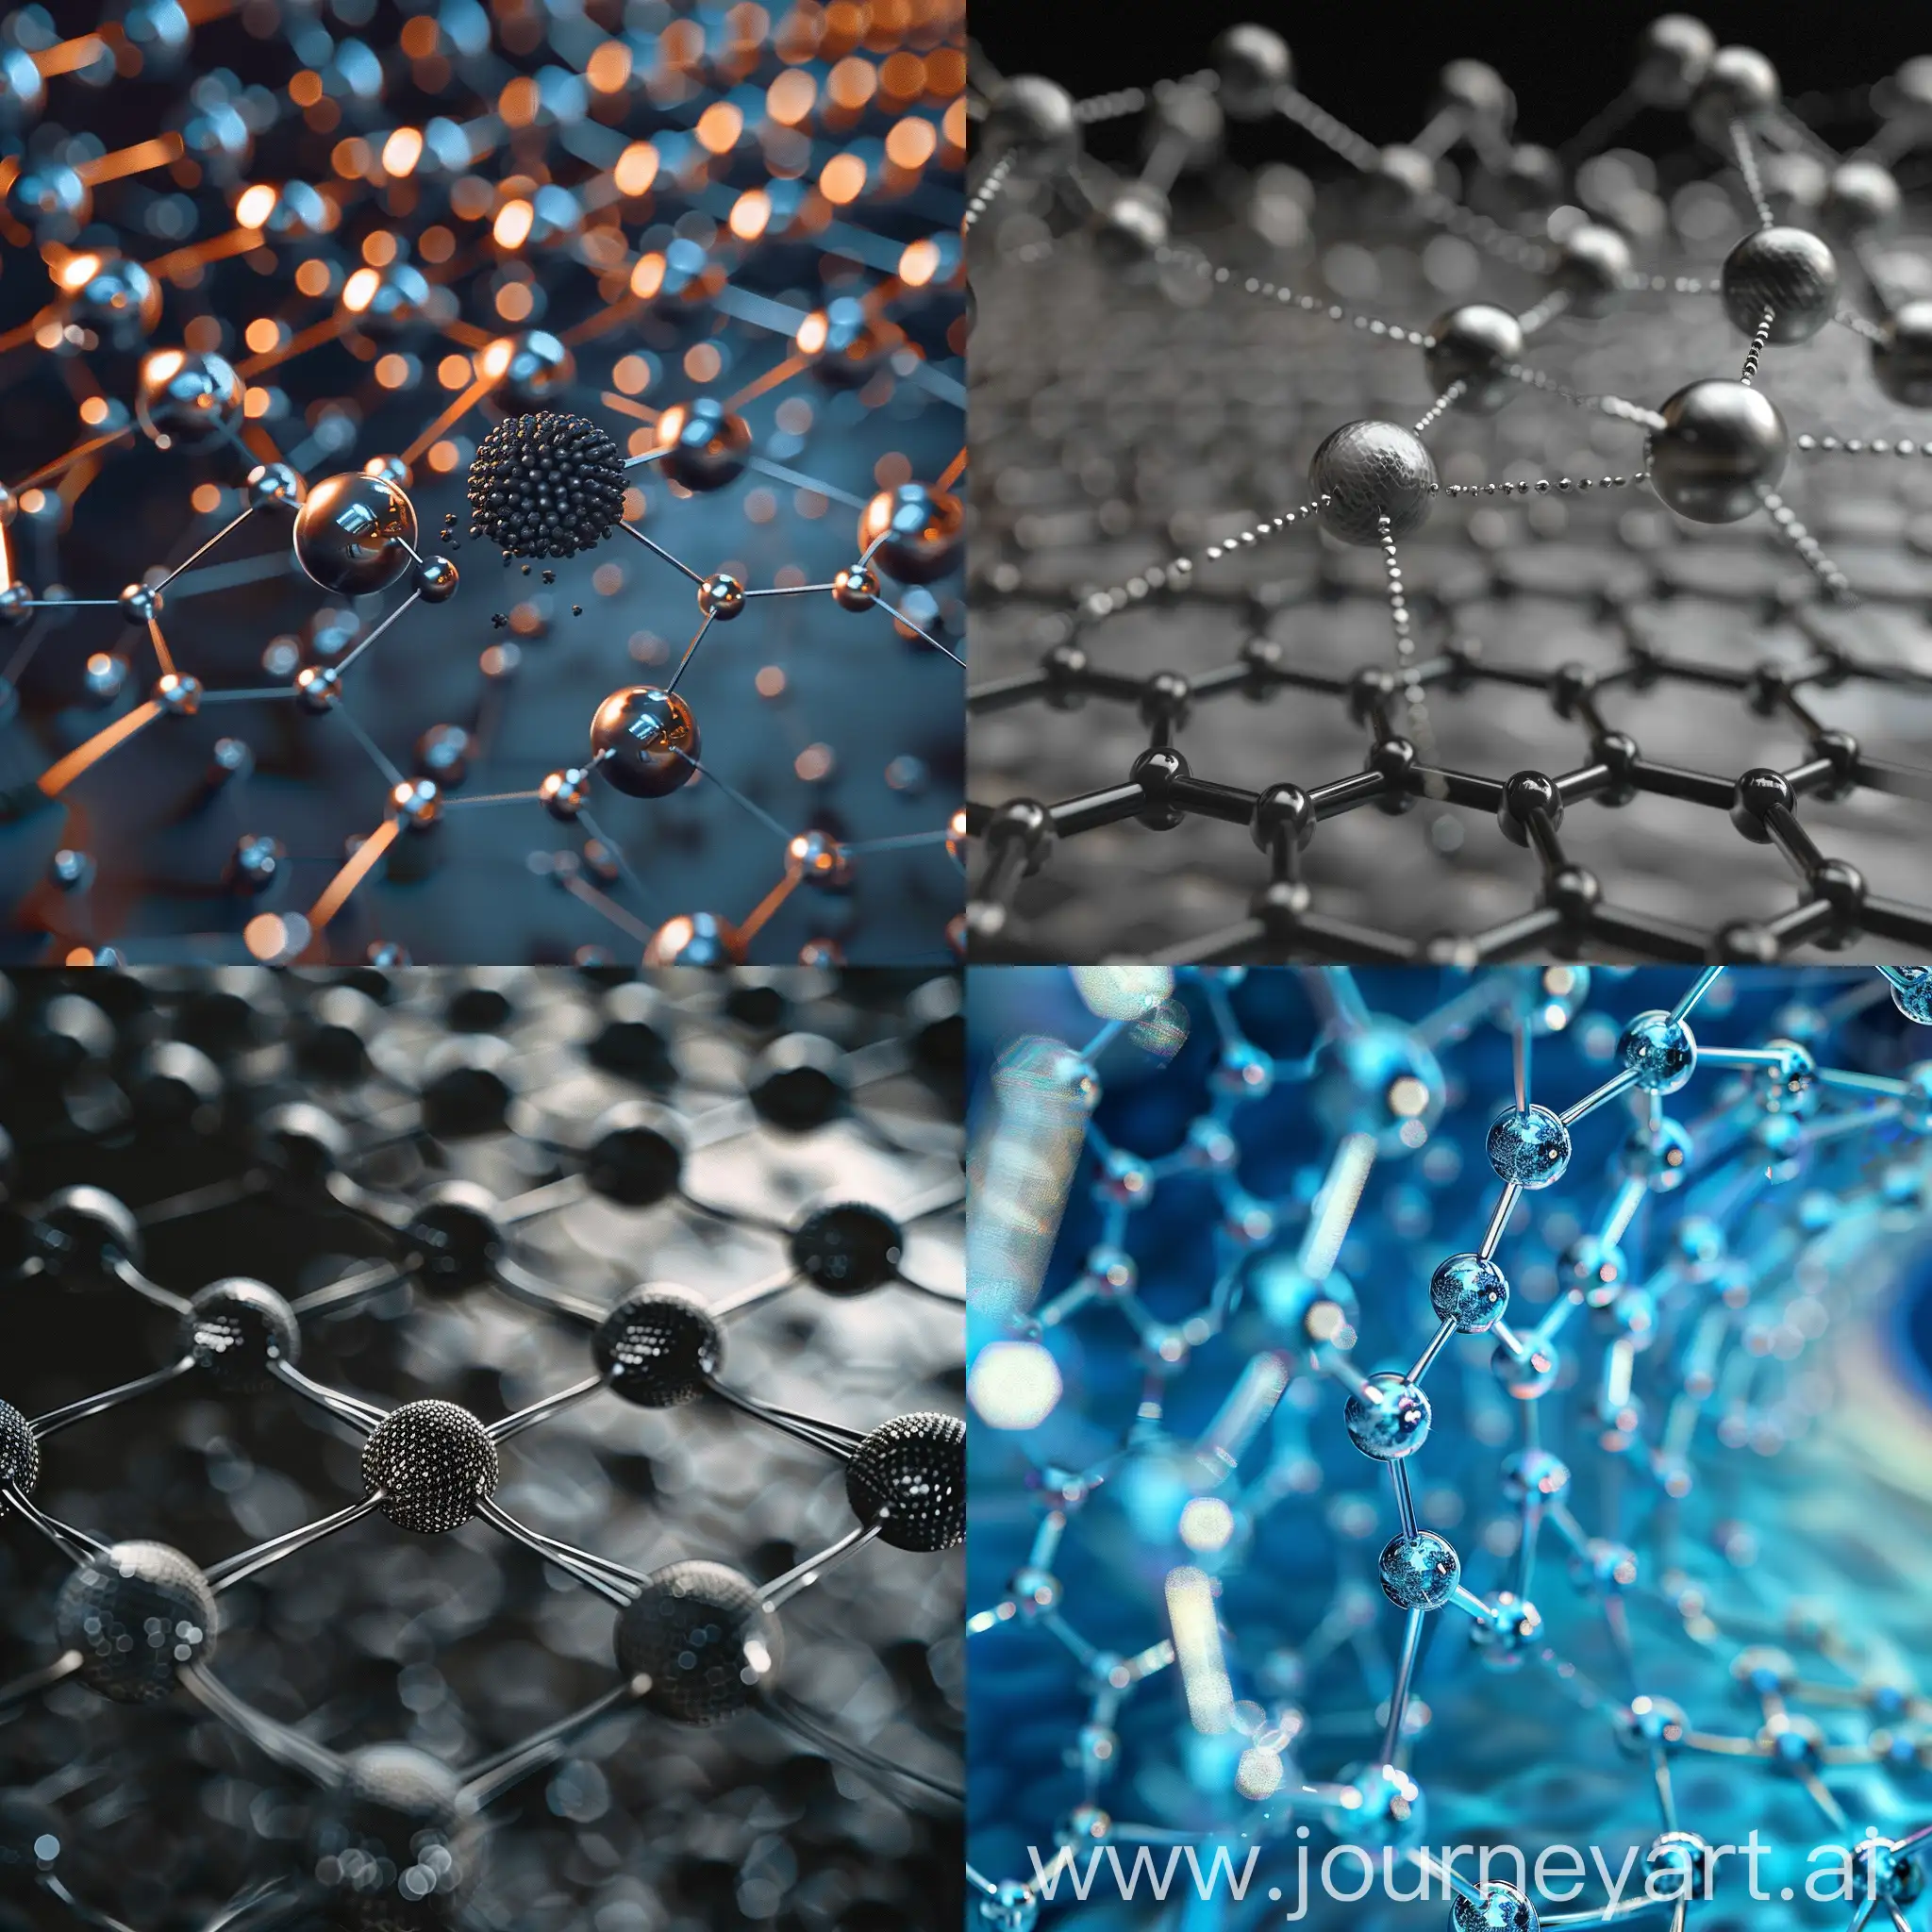 Carbon nanomaterials